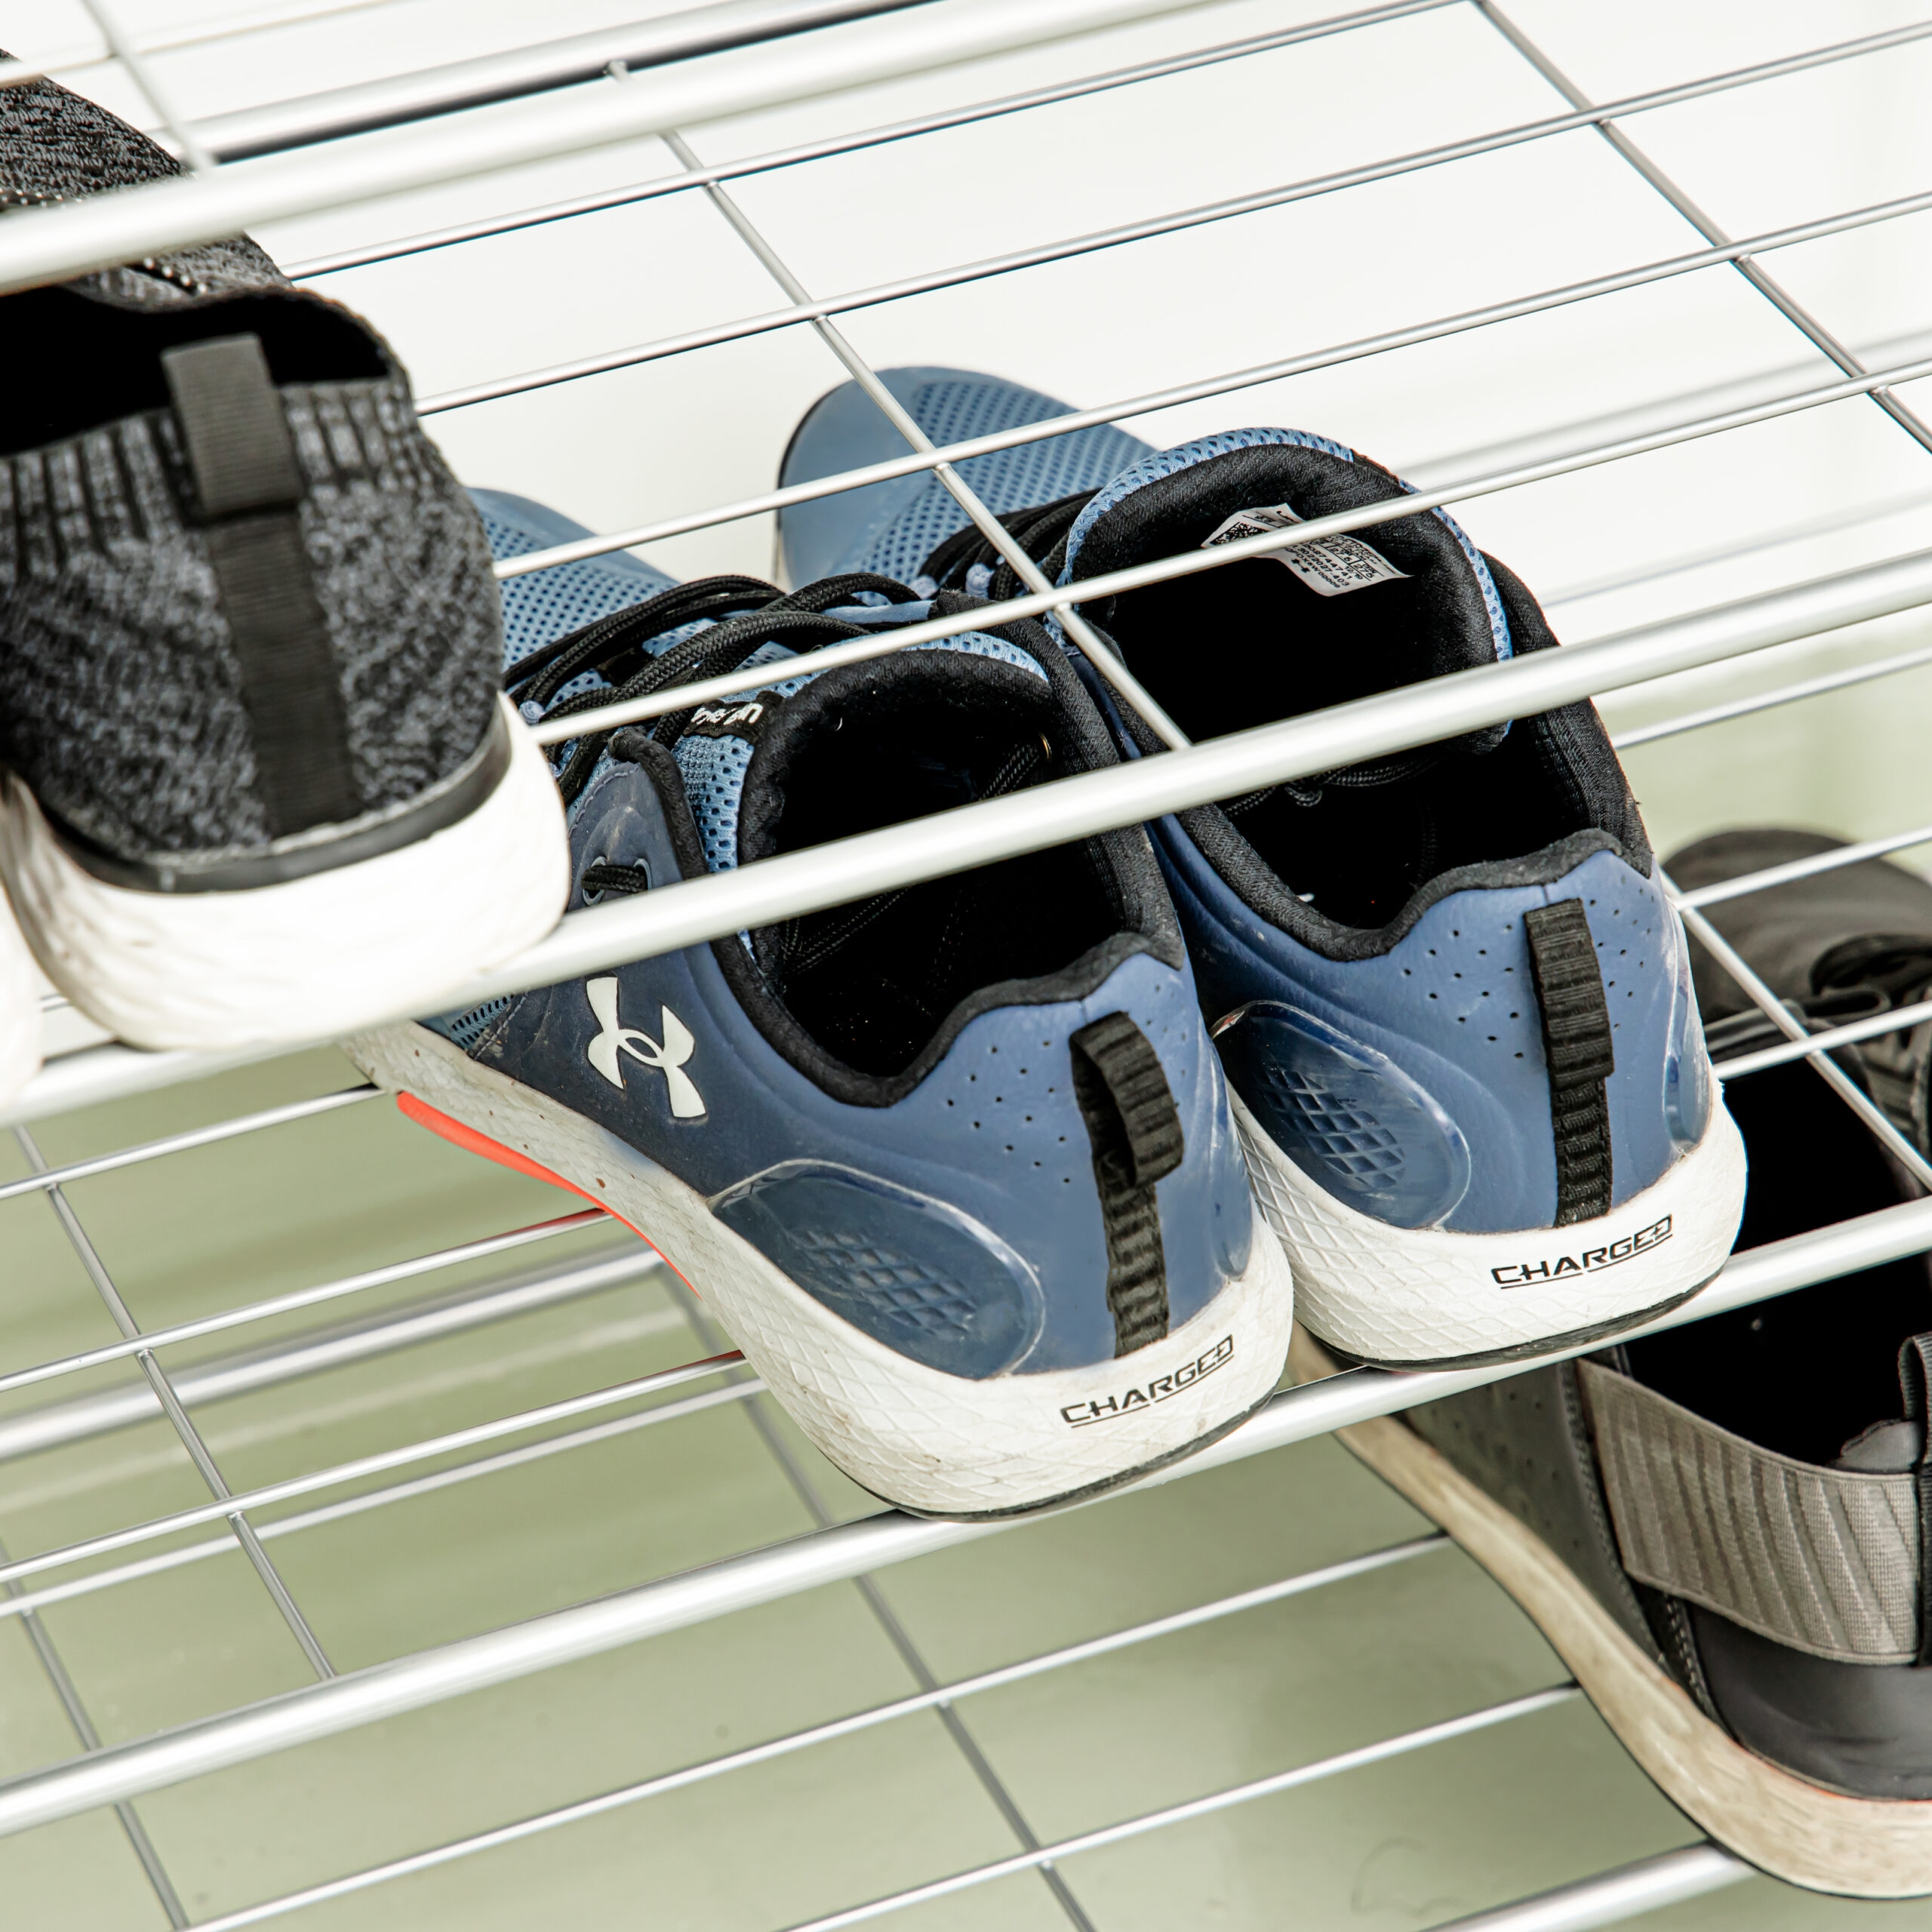 رف الأحذية 5 طبقات | Royalford 5-Tier Shoes Rack